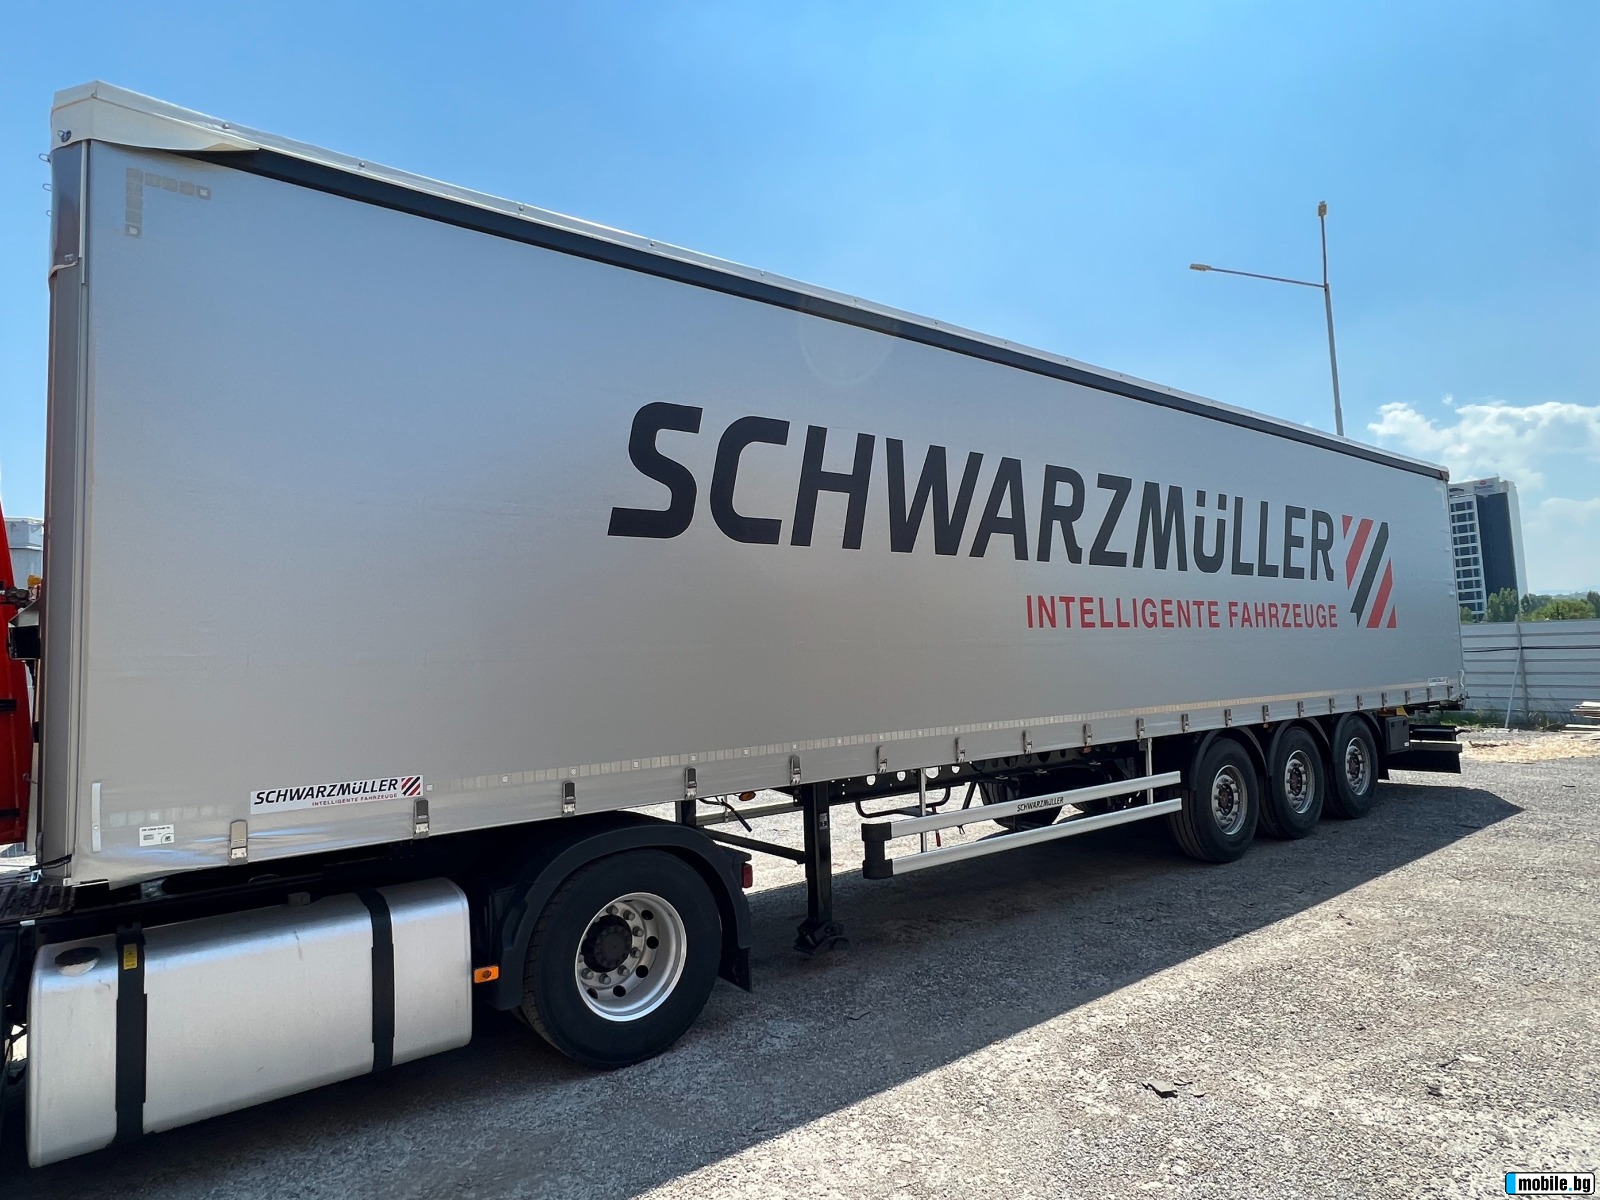  Schwarzmuller J-Serie, 5570kg, Goodyear,  | Mobile.bg   1